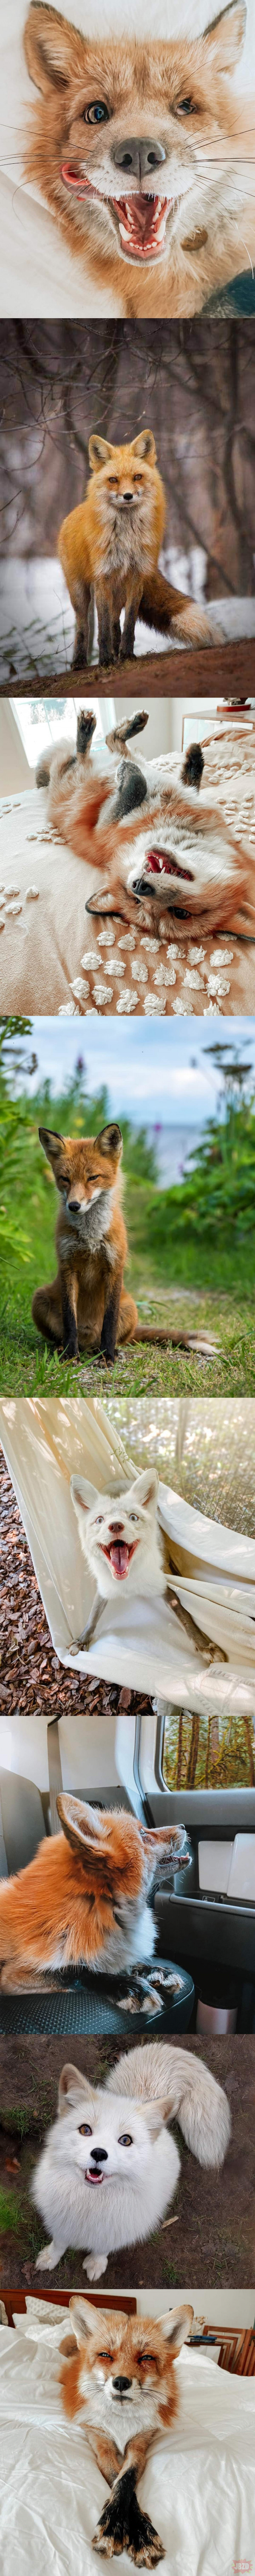 Więcej zdjęć lisów bo każdy kocha lisy